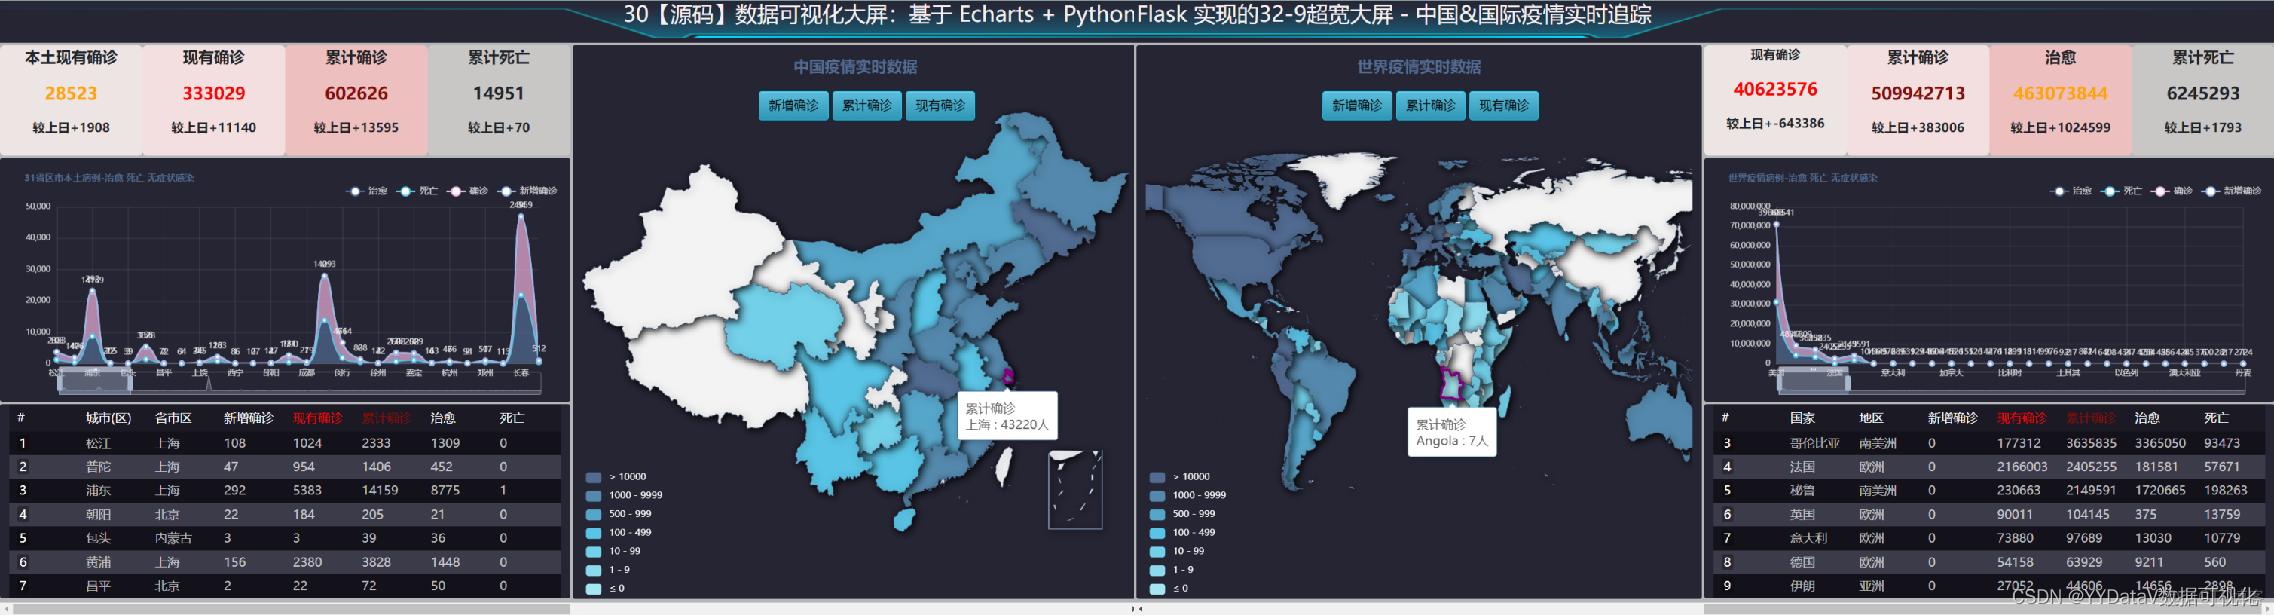 30【源码】数据可视化大屏：基于 Echarts + Python Flask 实现的32-9超宽大屏 - 中国&国际疫情实时追踪_json_03